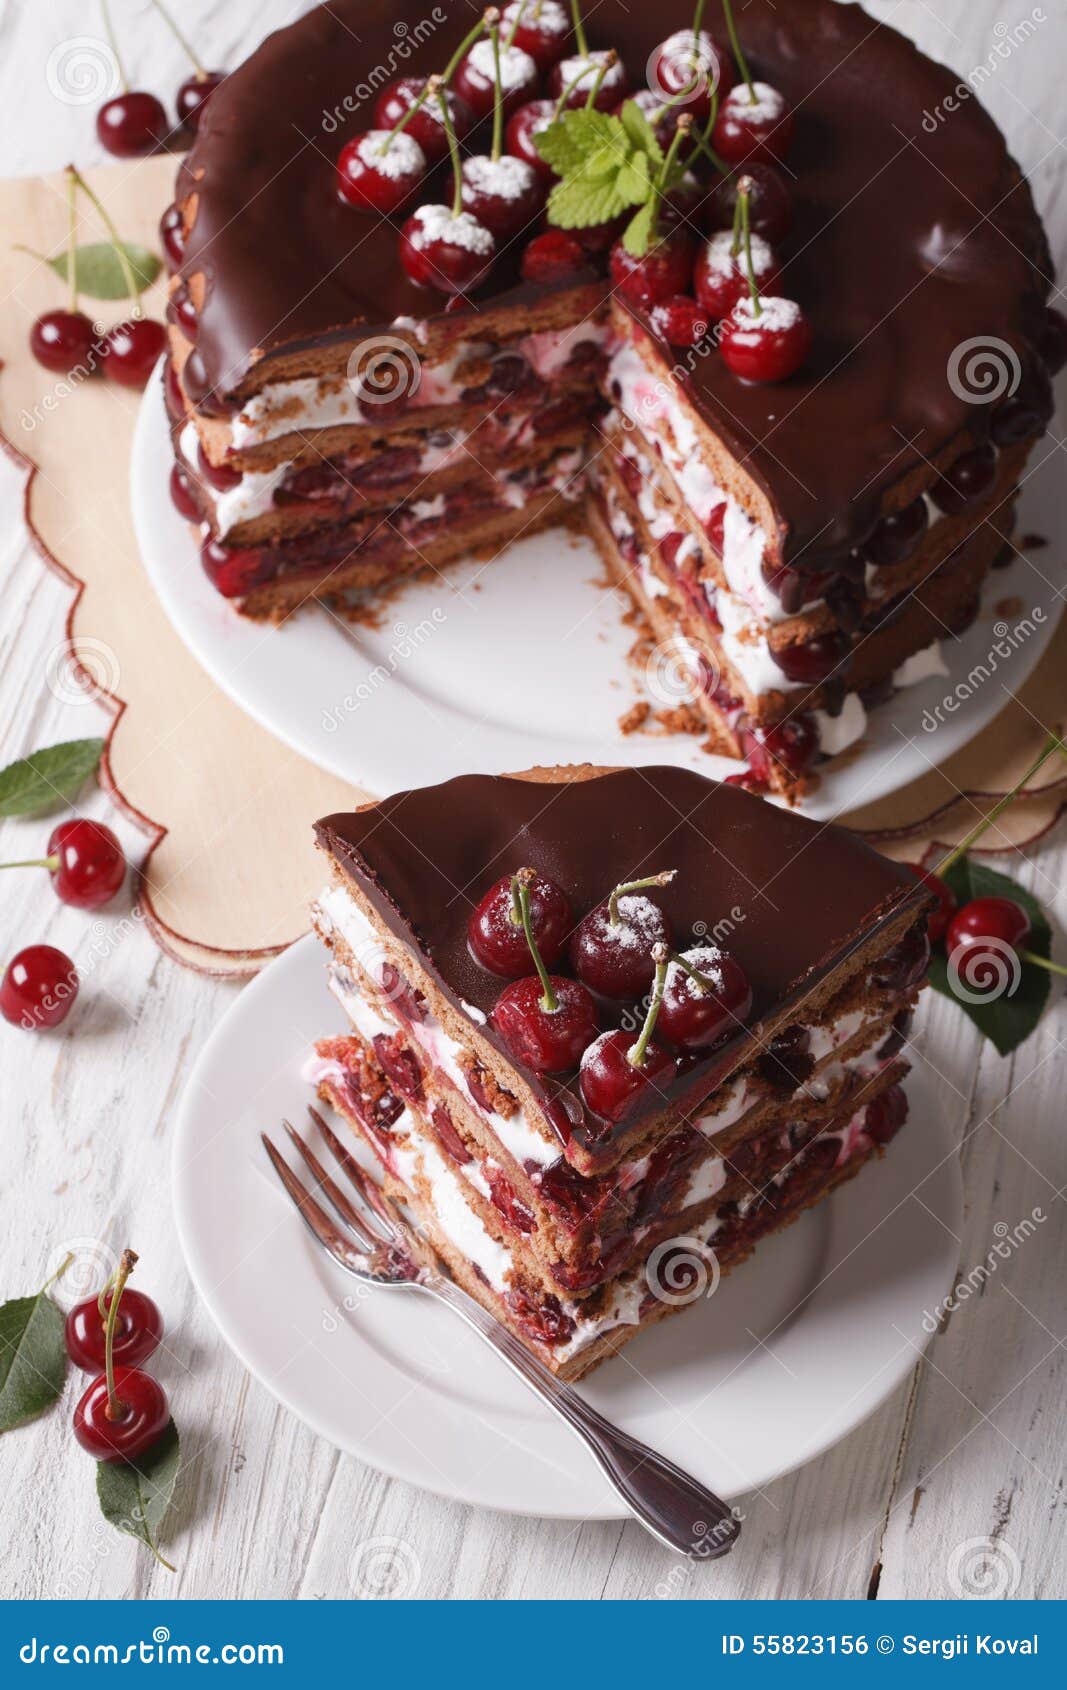 桌上有樱桃的巧克力海绵蛋糕 库存照片. 图片 包括有 烘烤, 卡路里, 发狂, 新鲜, 剪切, 甜甜, 厨房 - 219255762